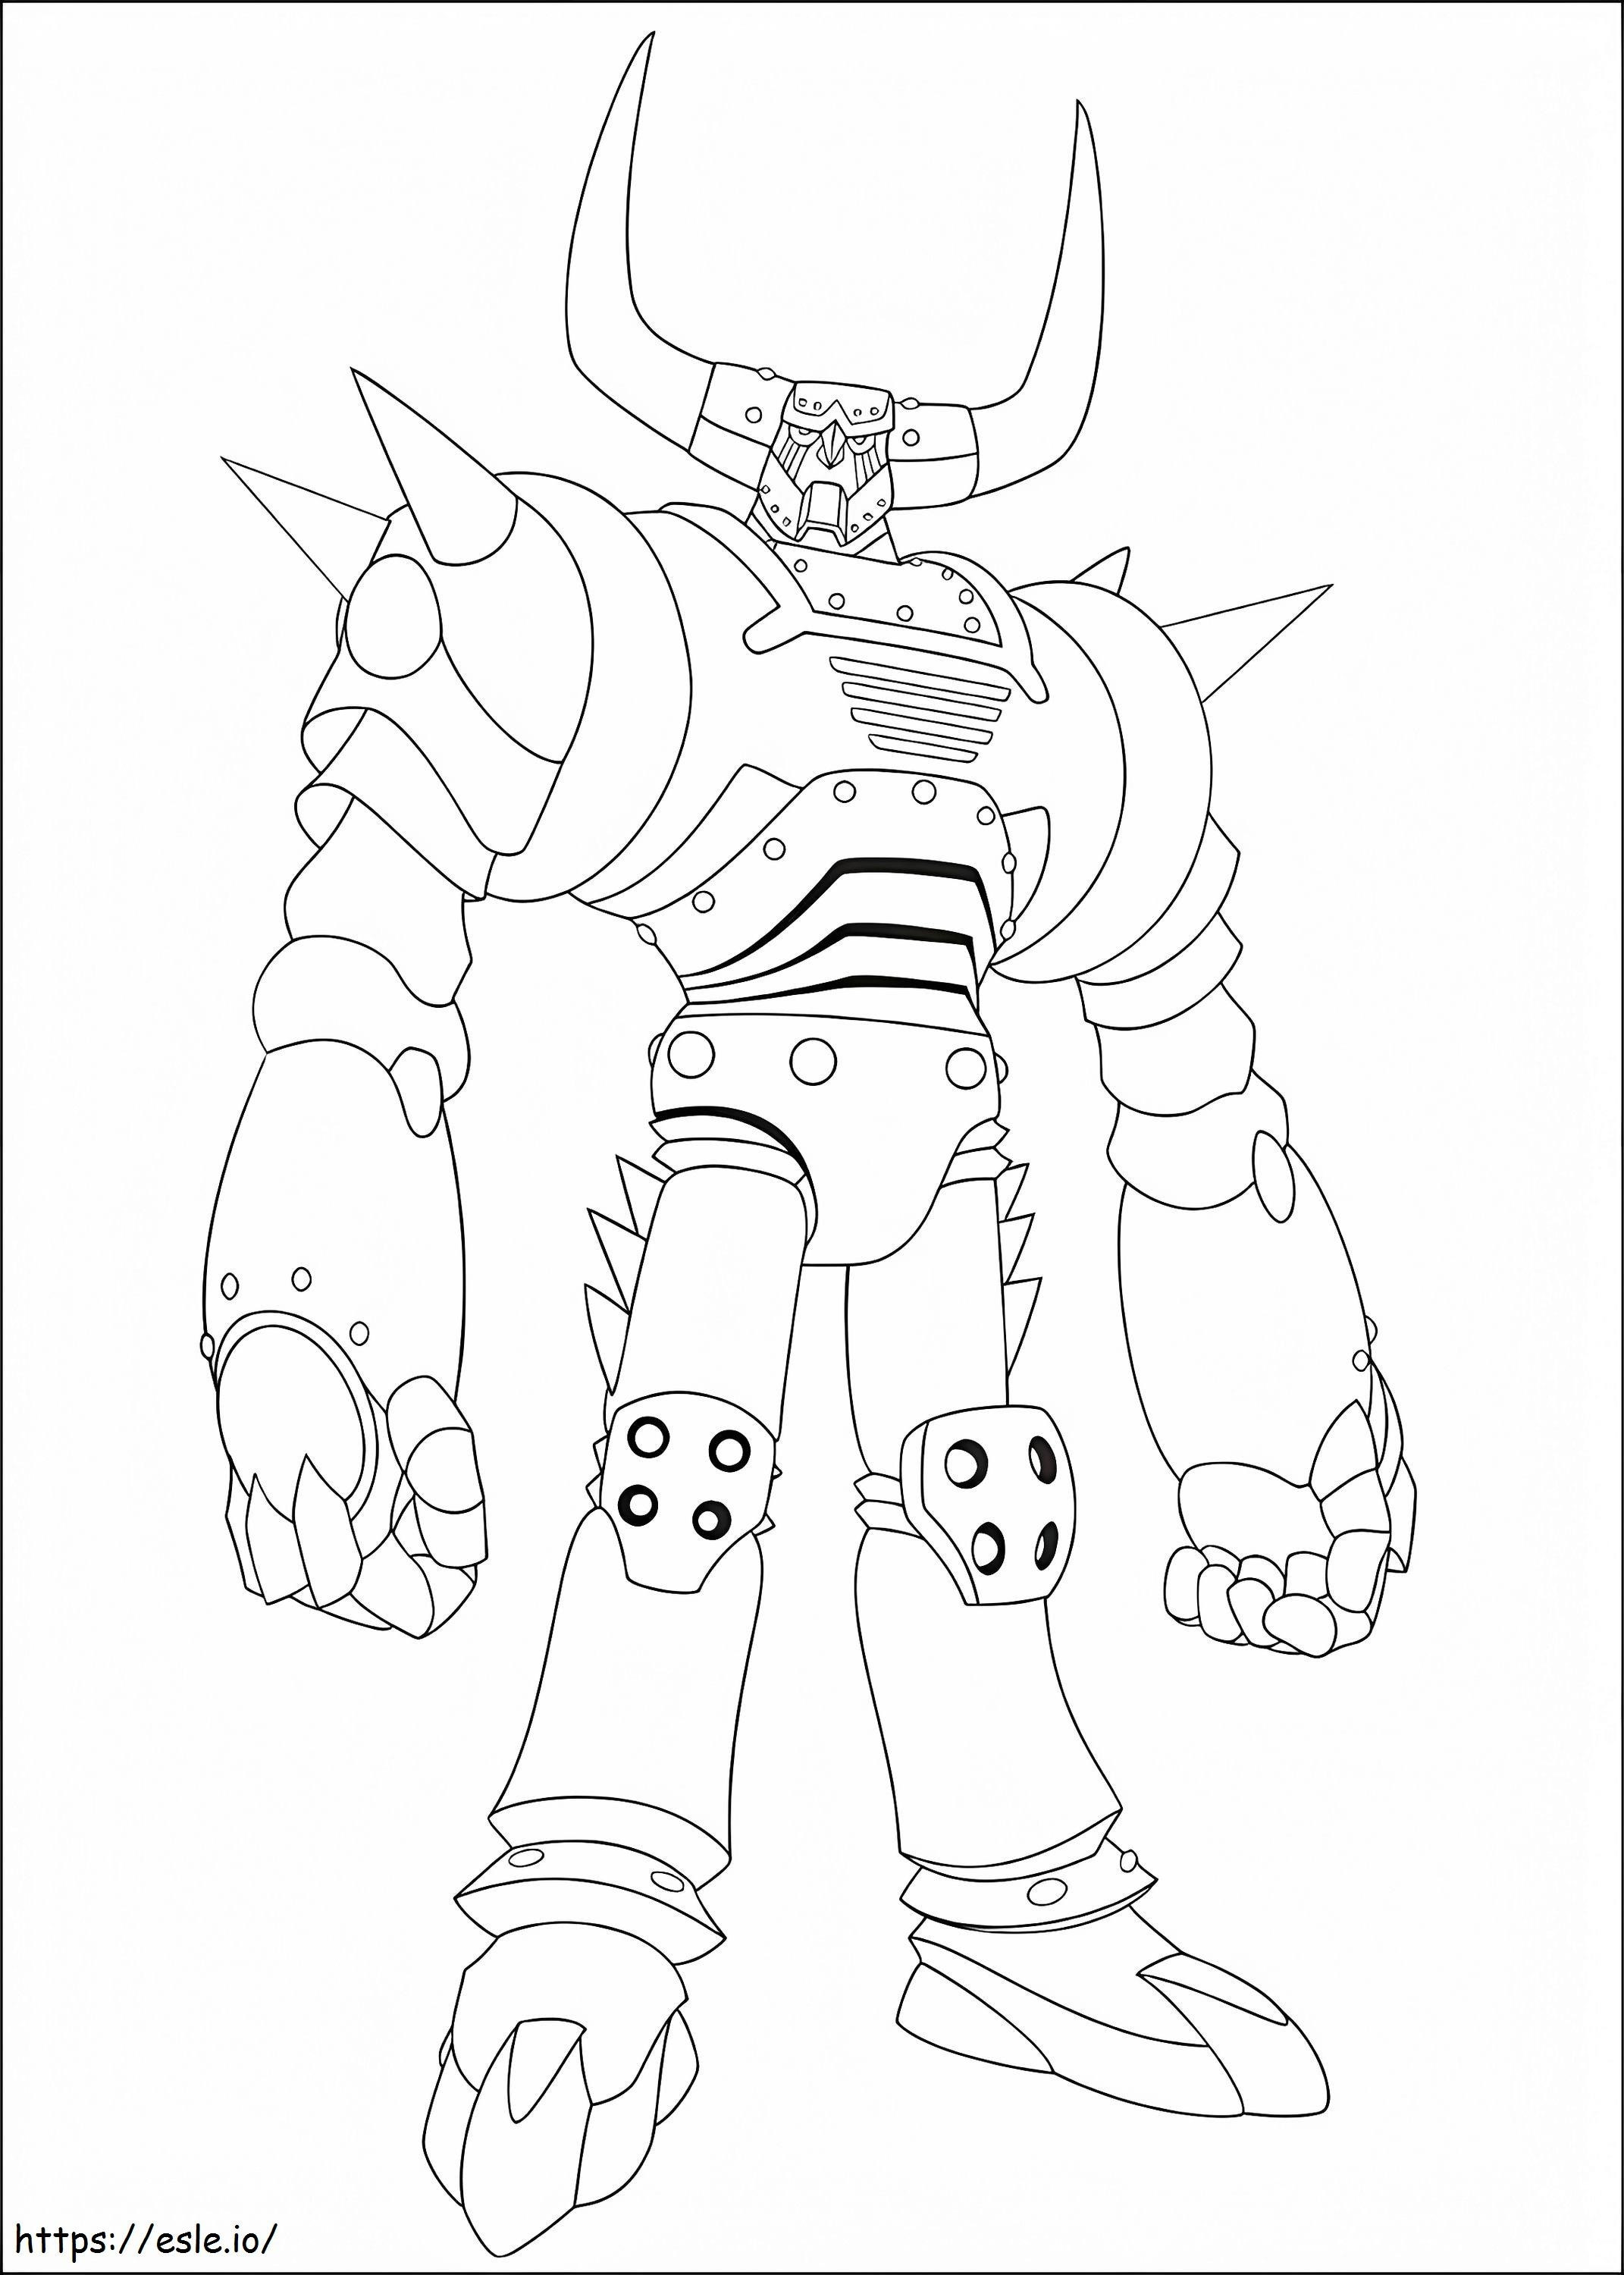  Plutão De Astro Boy A4 para colorir